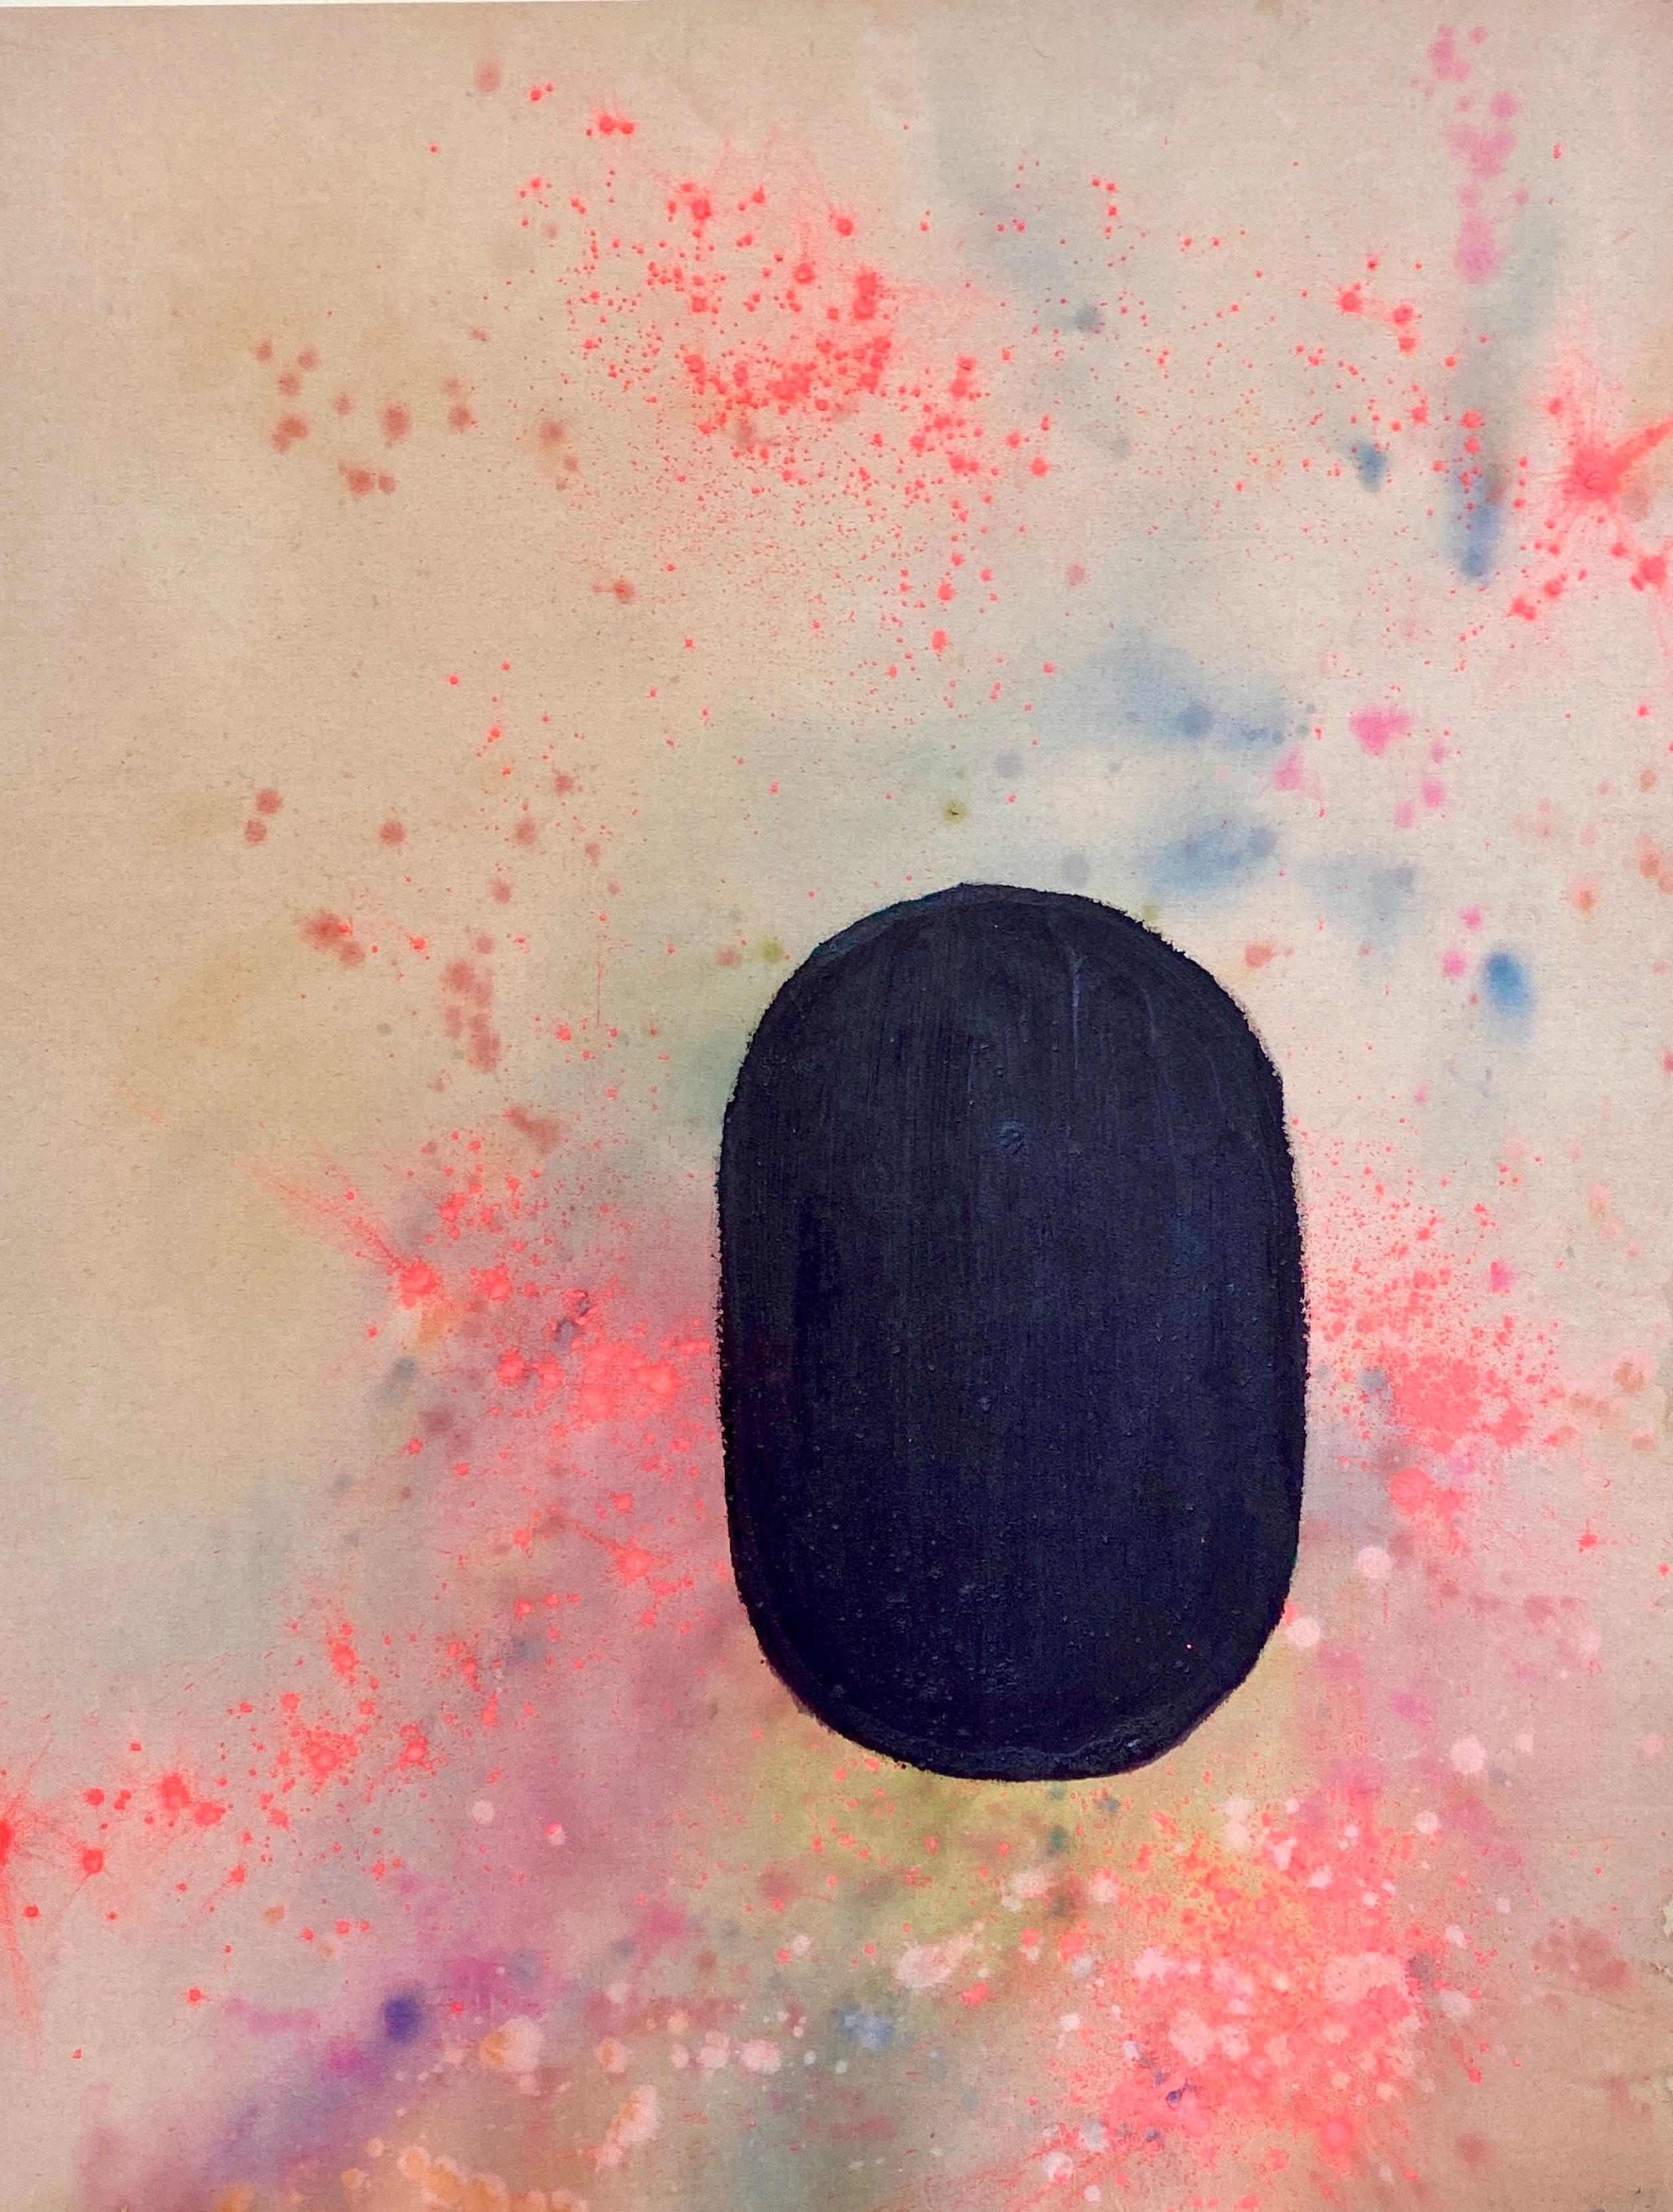 Abstract Painting Elisa Niva - Peinture en poudre Tantra de Holi n°4 - Peinture à teinture tantrique abstraite colorée